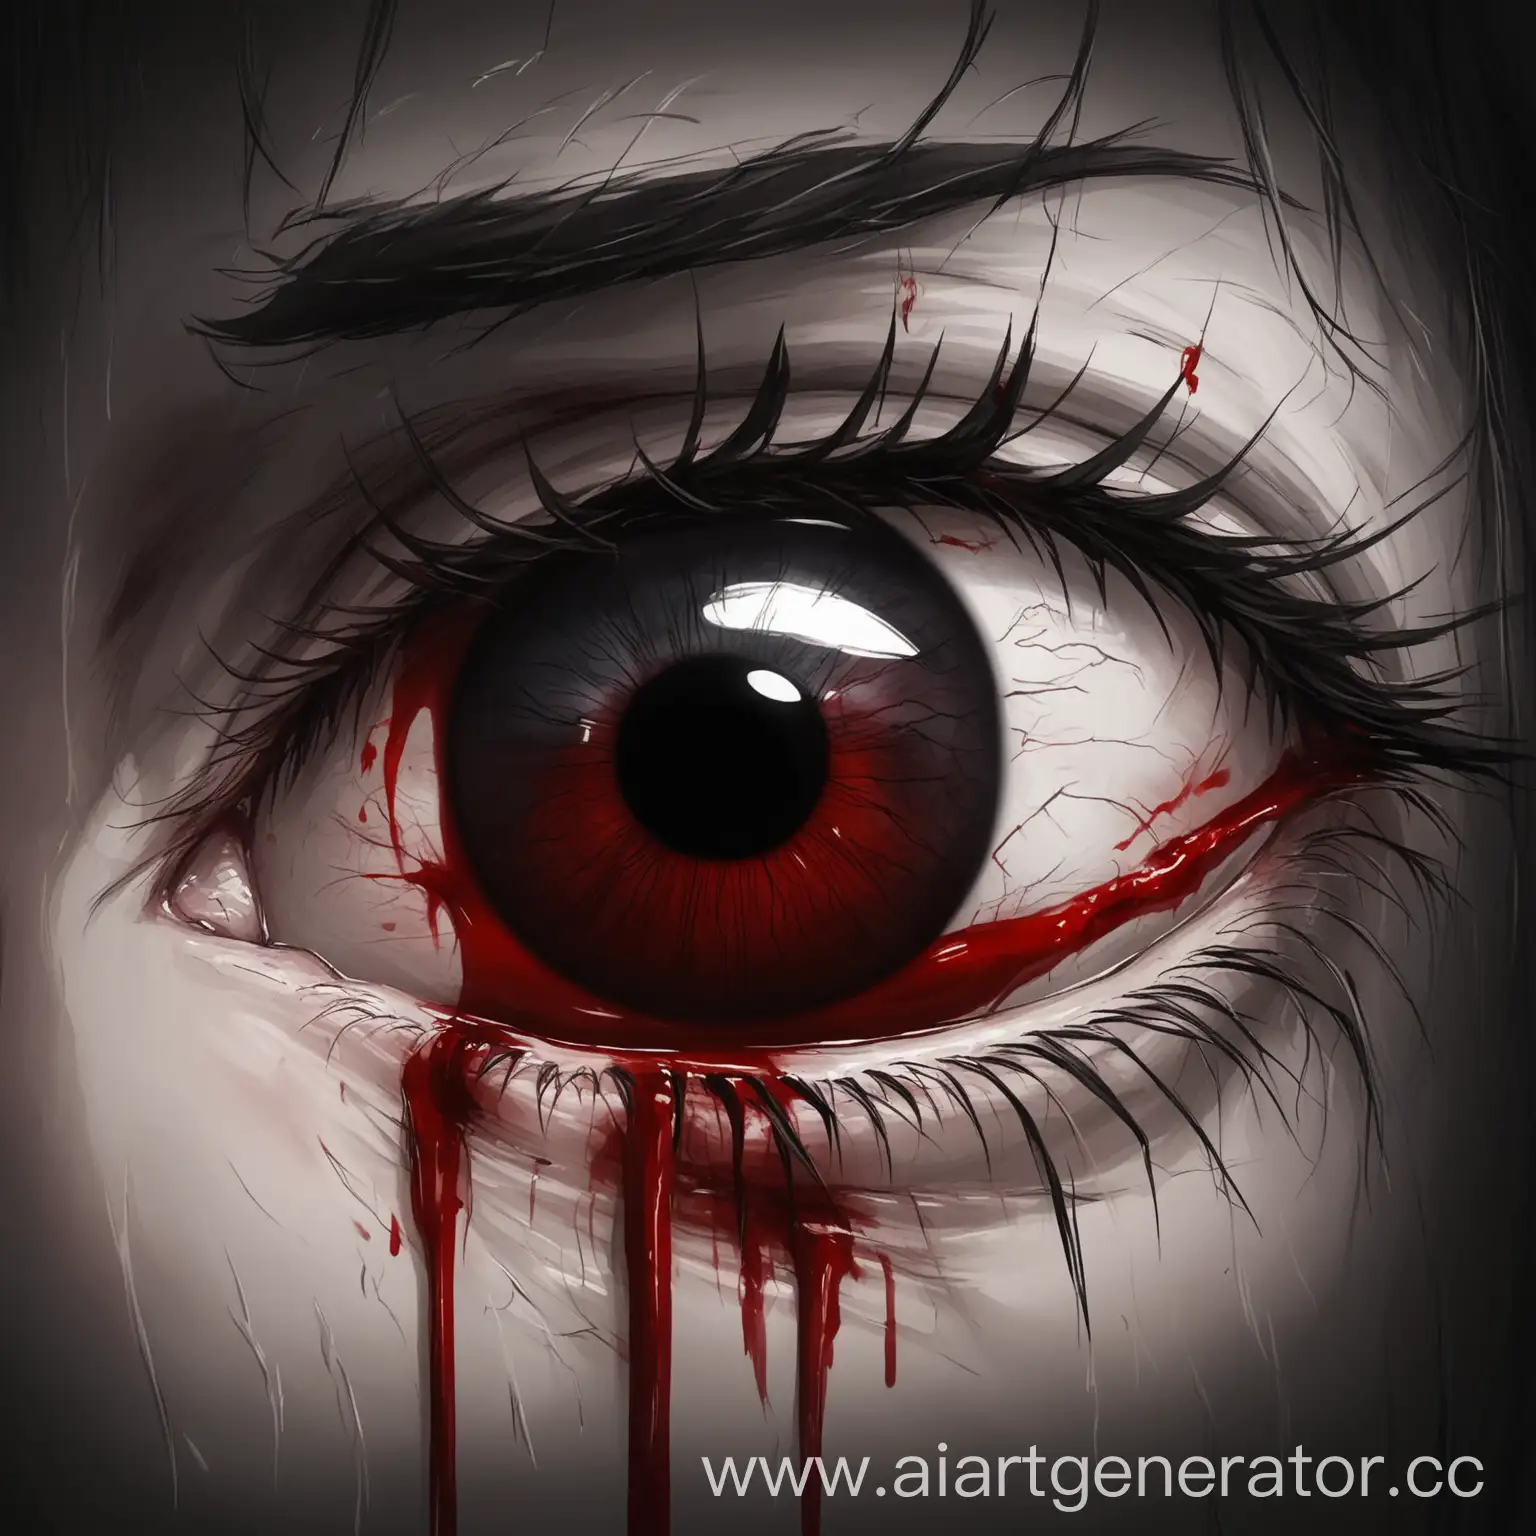 темный глаз в котором боль 
из глаза идет кровь 